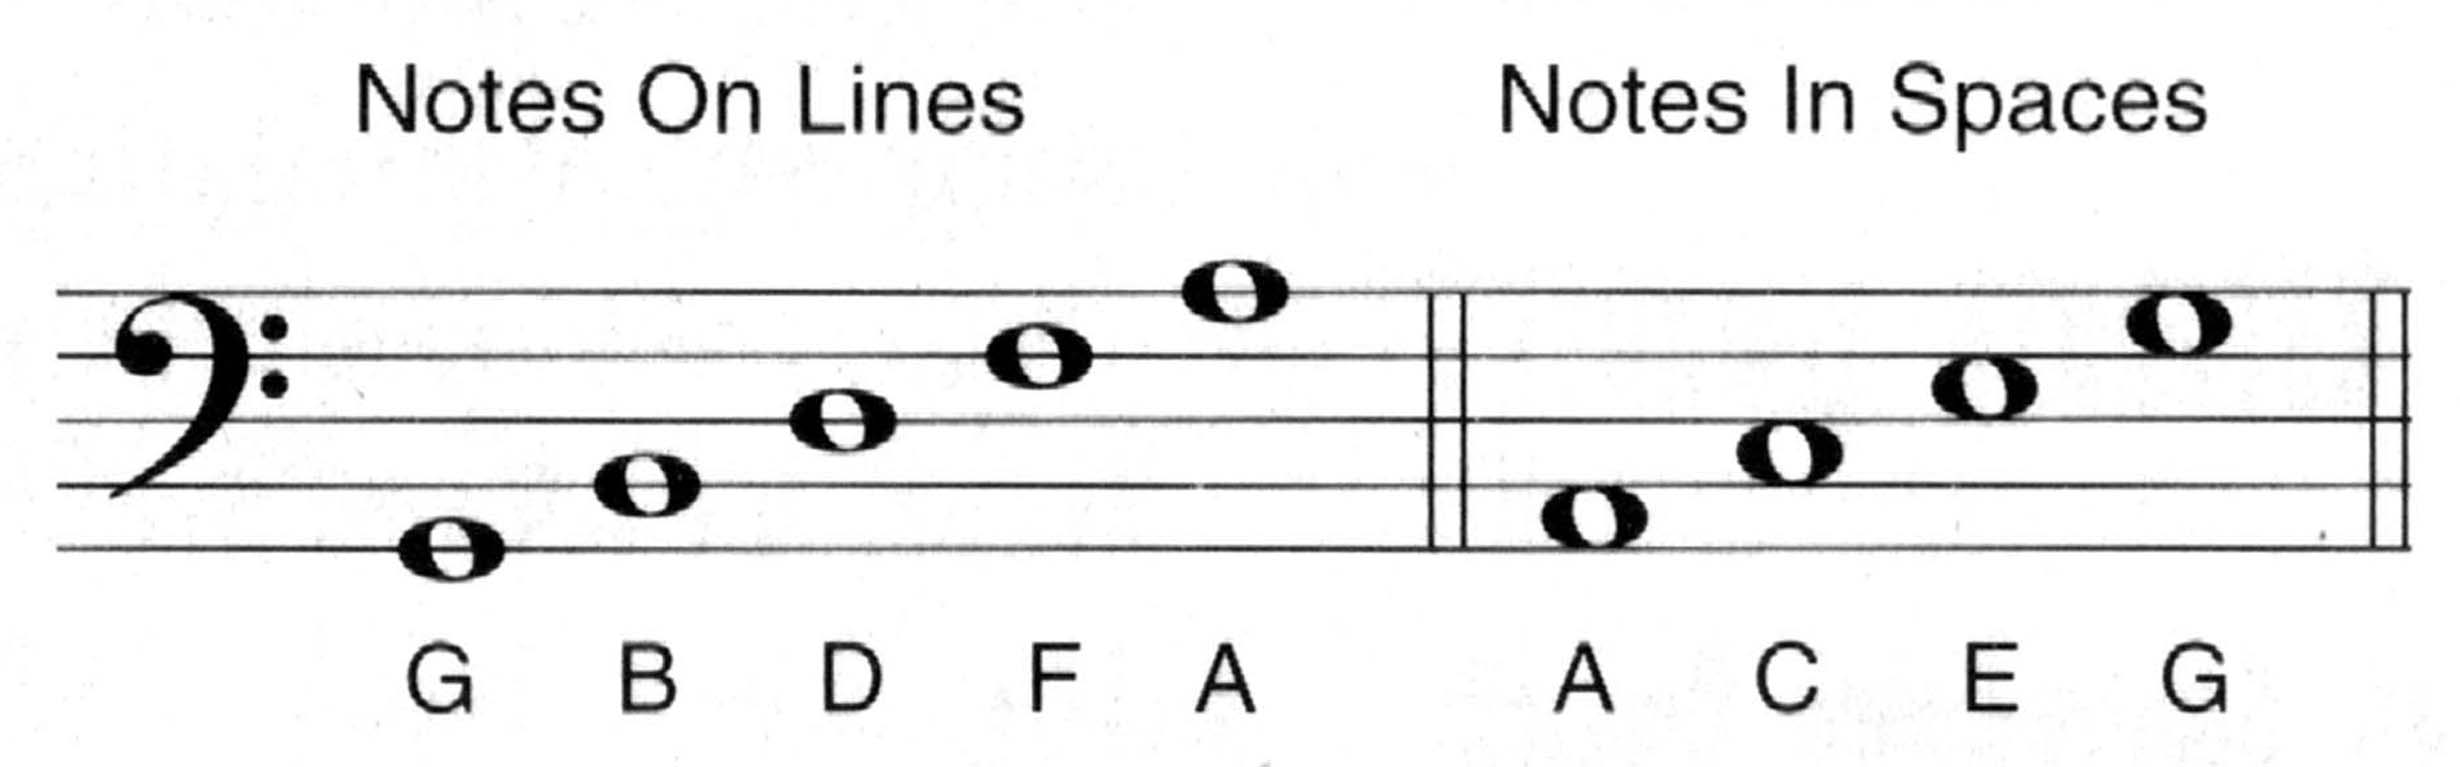 bass clef notea